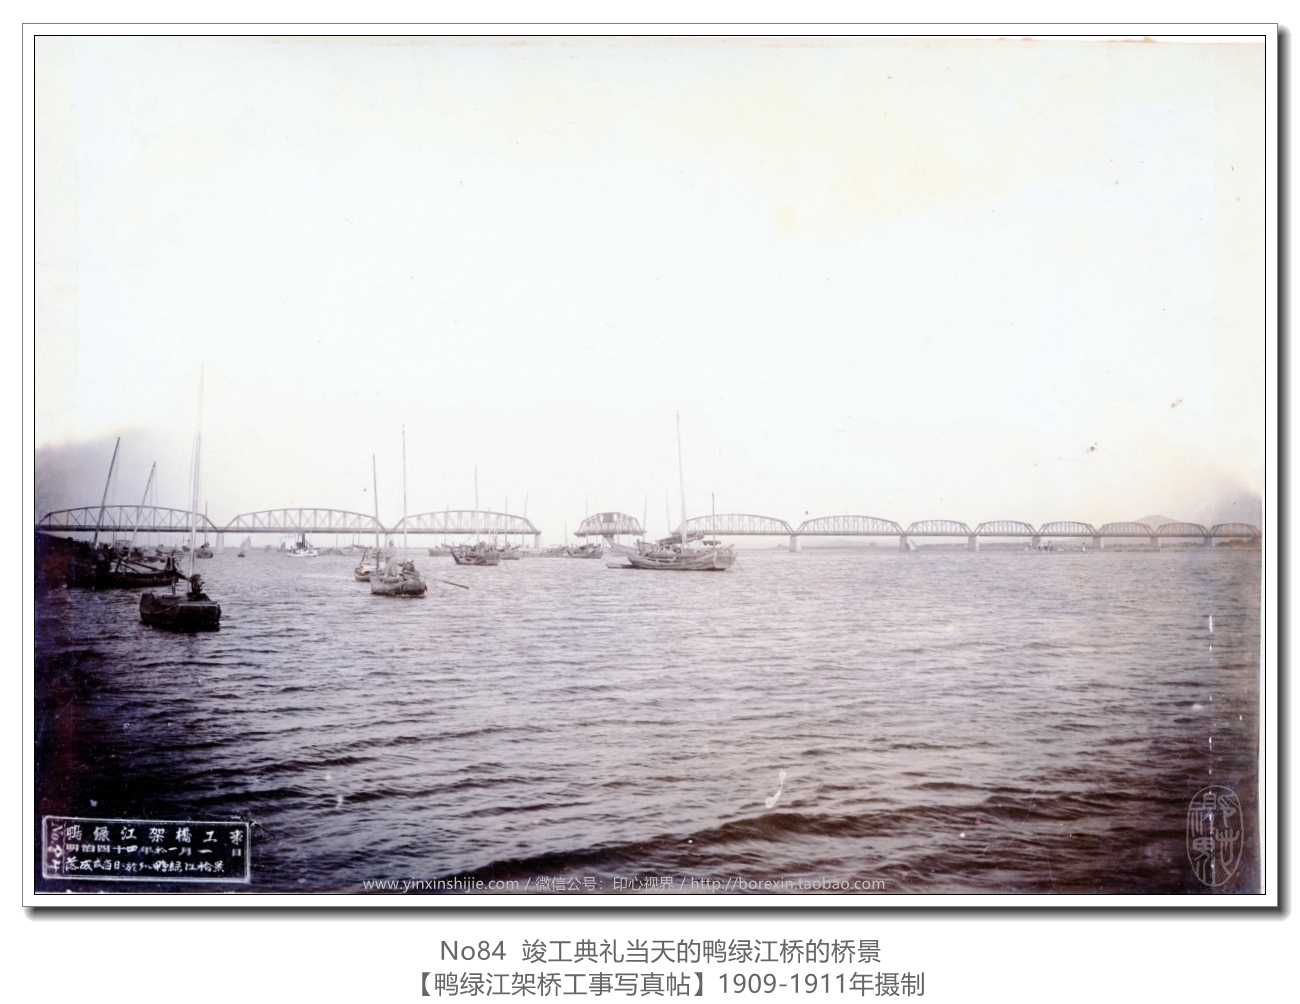 【万卷书】《鸭绿江架桥工事写真帖1911》No84竣工典礼当天的鸭绿江桥的桥景